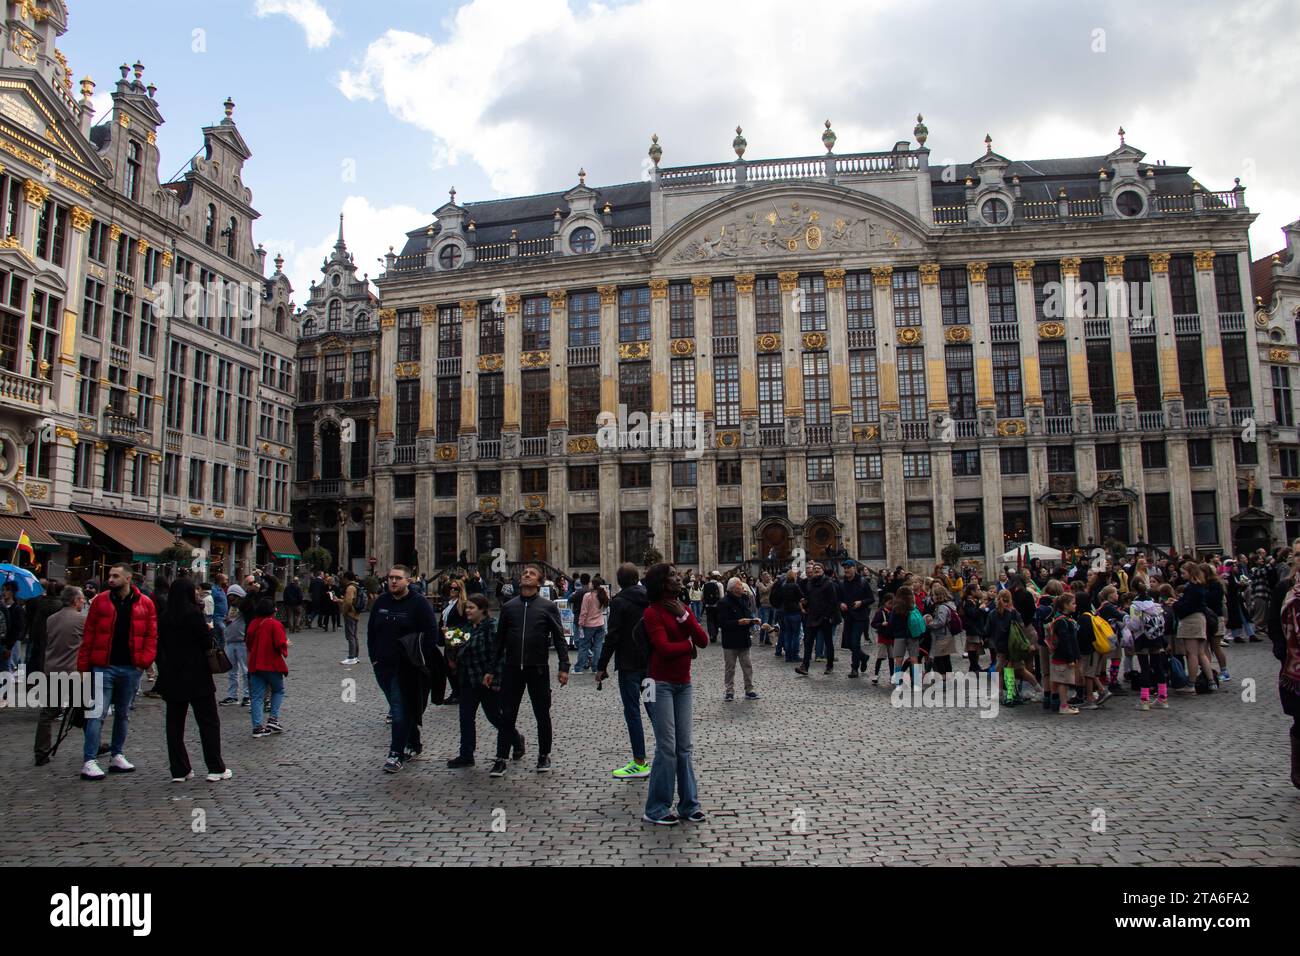 La Grand-place de Bruxelles datant de la fin du 17e siècle. Les bâtiments entourant la place comprennent d'opulentes salles de guildhalls baroques Banque D'Images